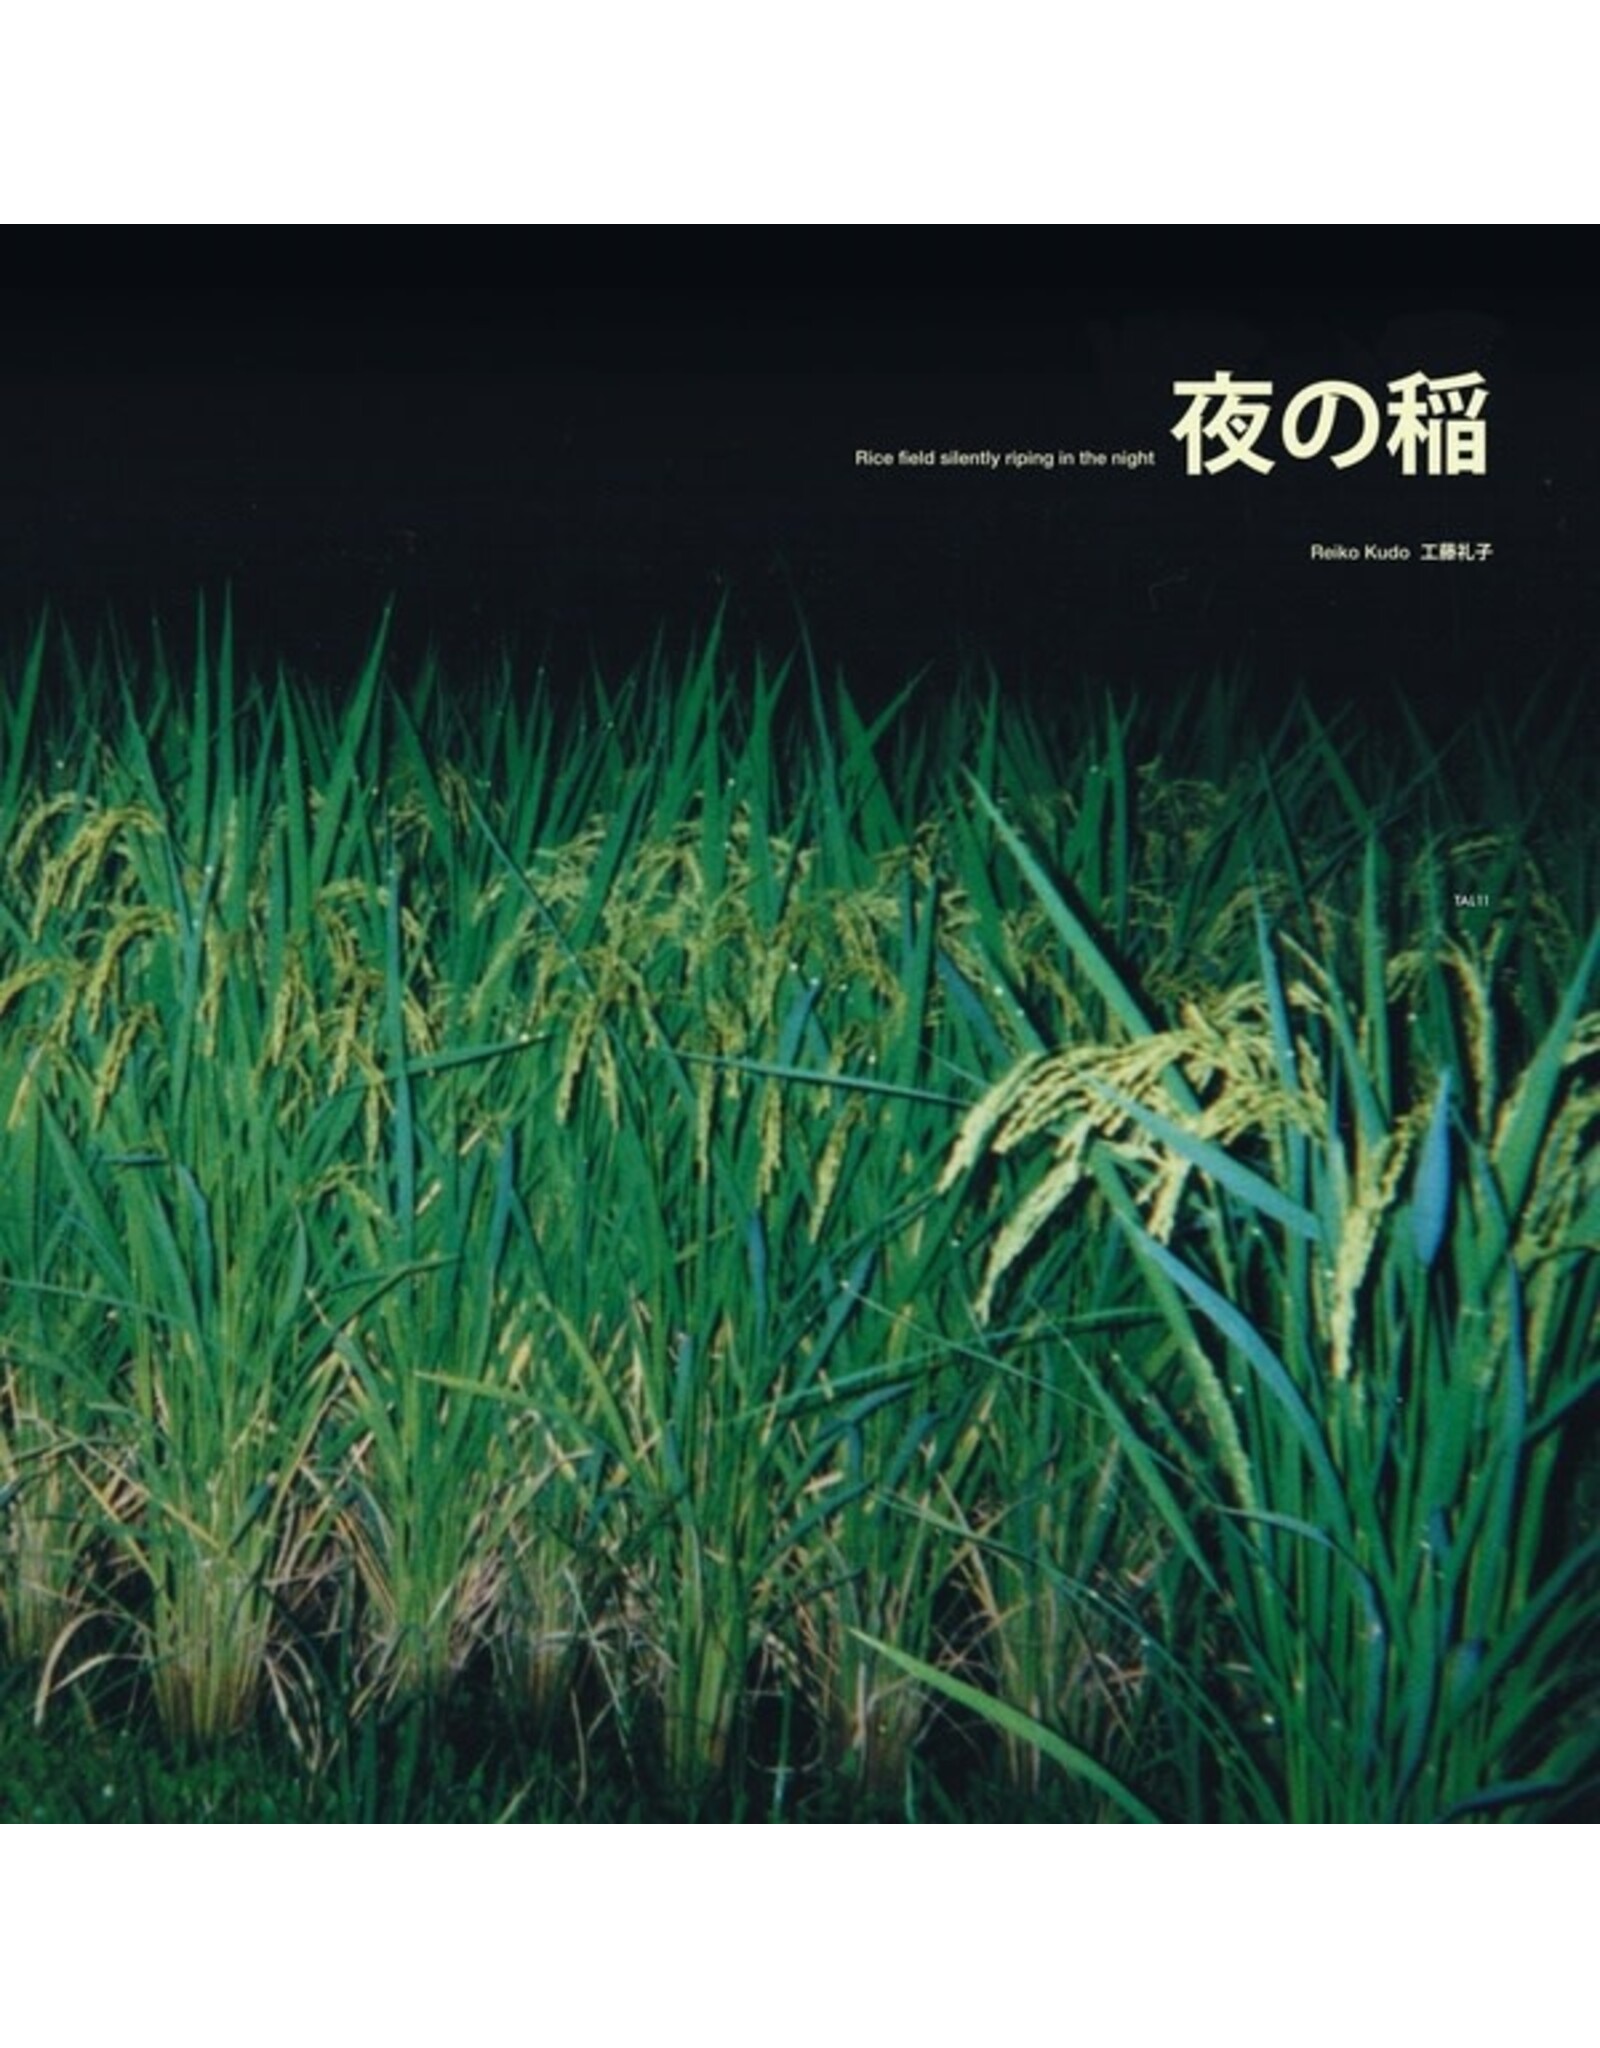 Kudo, Reiko: Rice Field LP